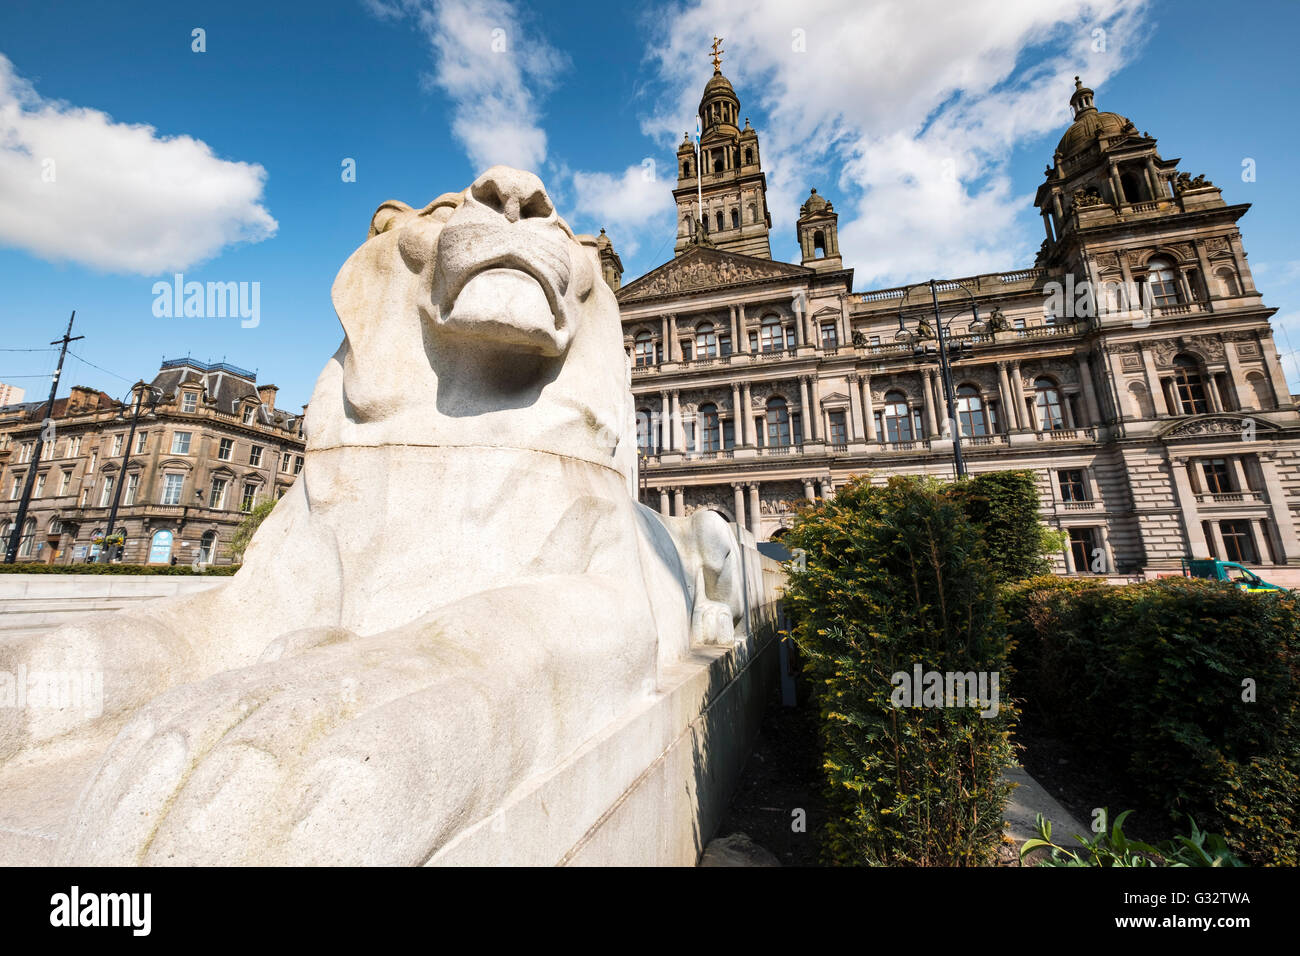 Vista de la Estatua de León en frente de cámaras de la ciudad en la Plaza de George, Glasgow, Reino Unido Foto de stock